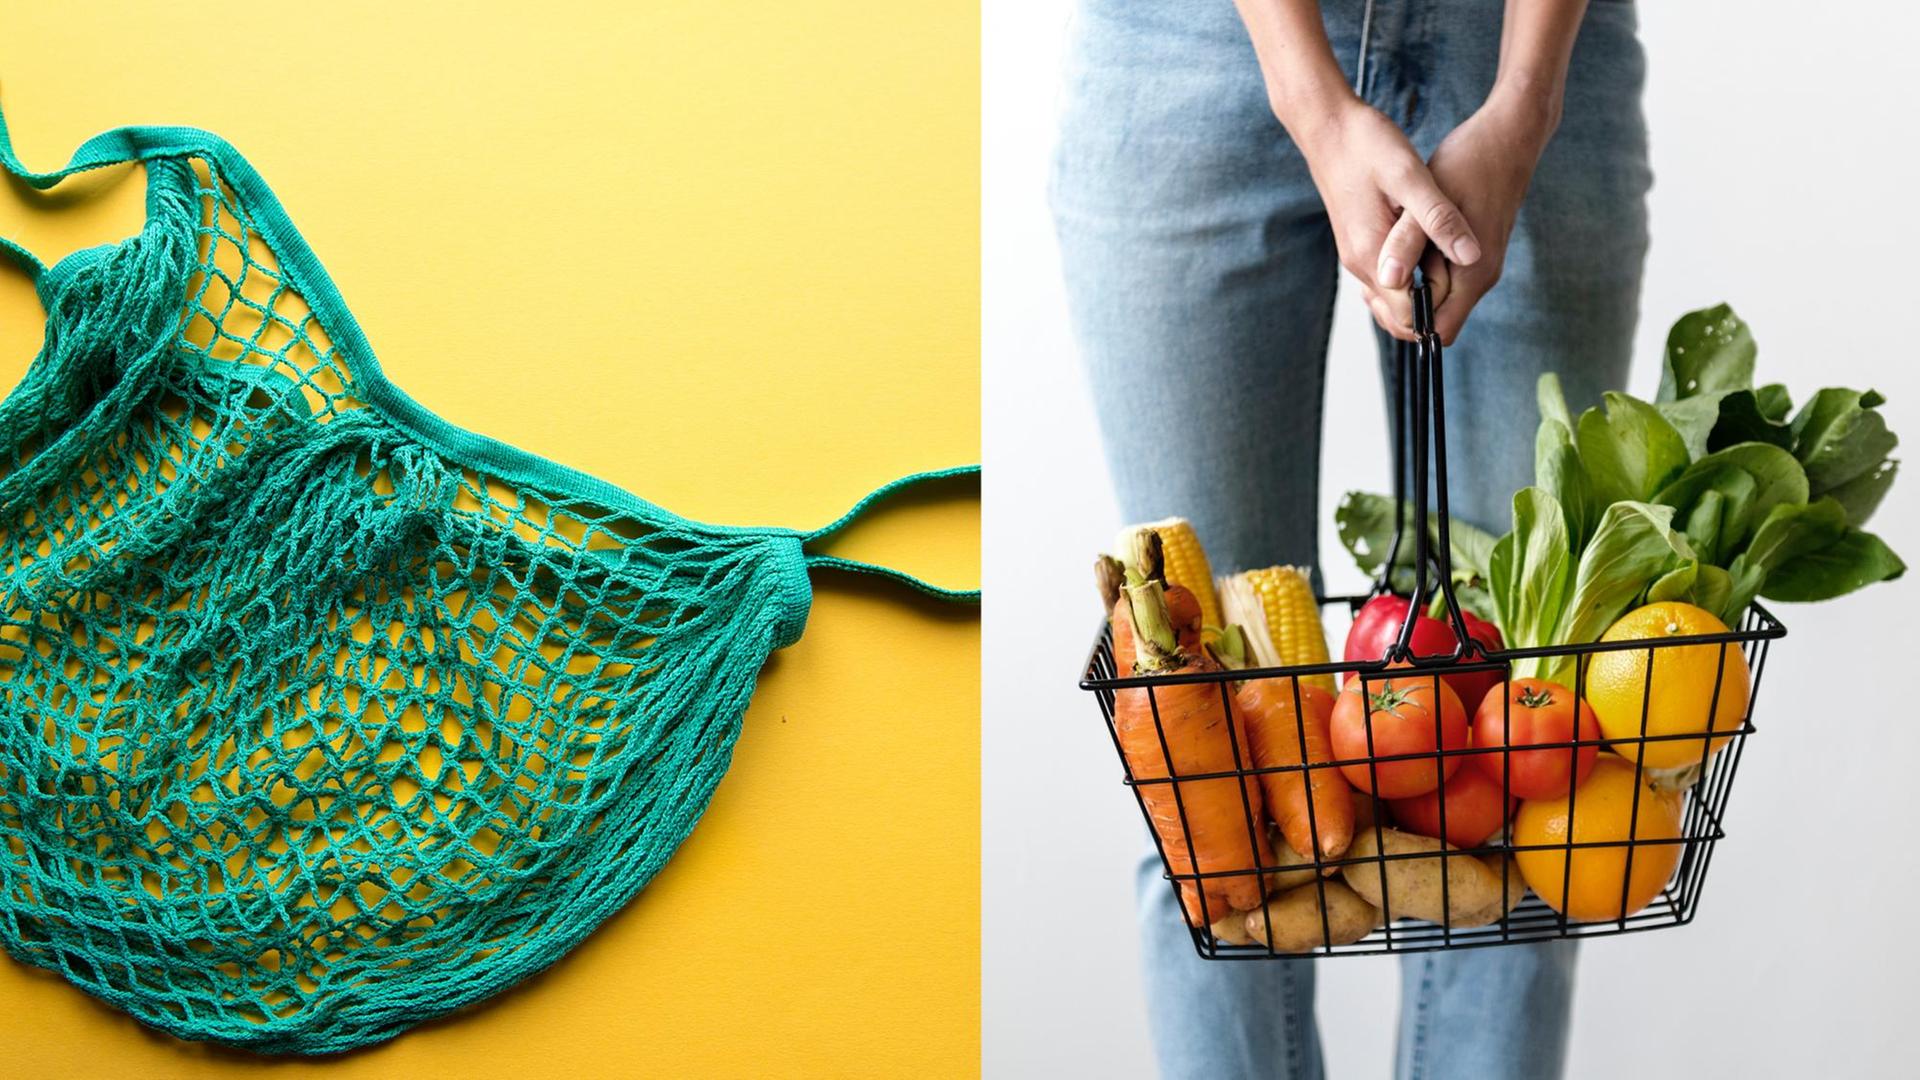 Collage aus zwei Bildern: links ein leeres Einkaufsnetz. Rechts ein gesund und prall gefüllter Einkaufskorb.